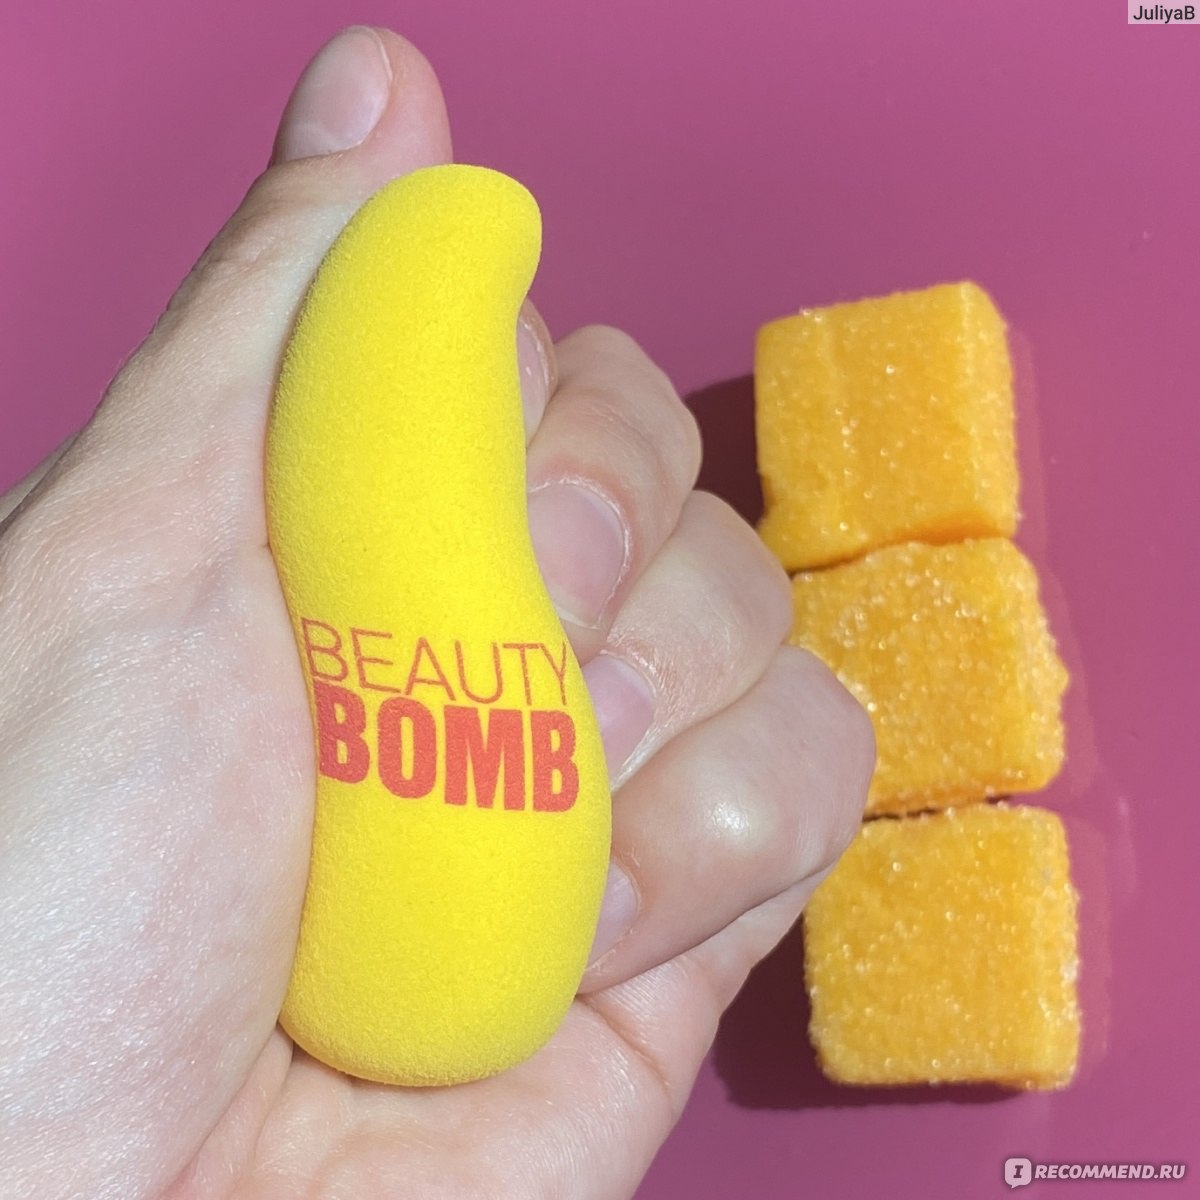 Спонж mango beauty bomb